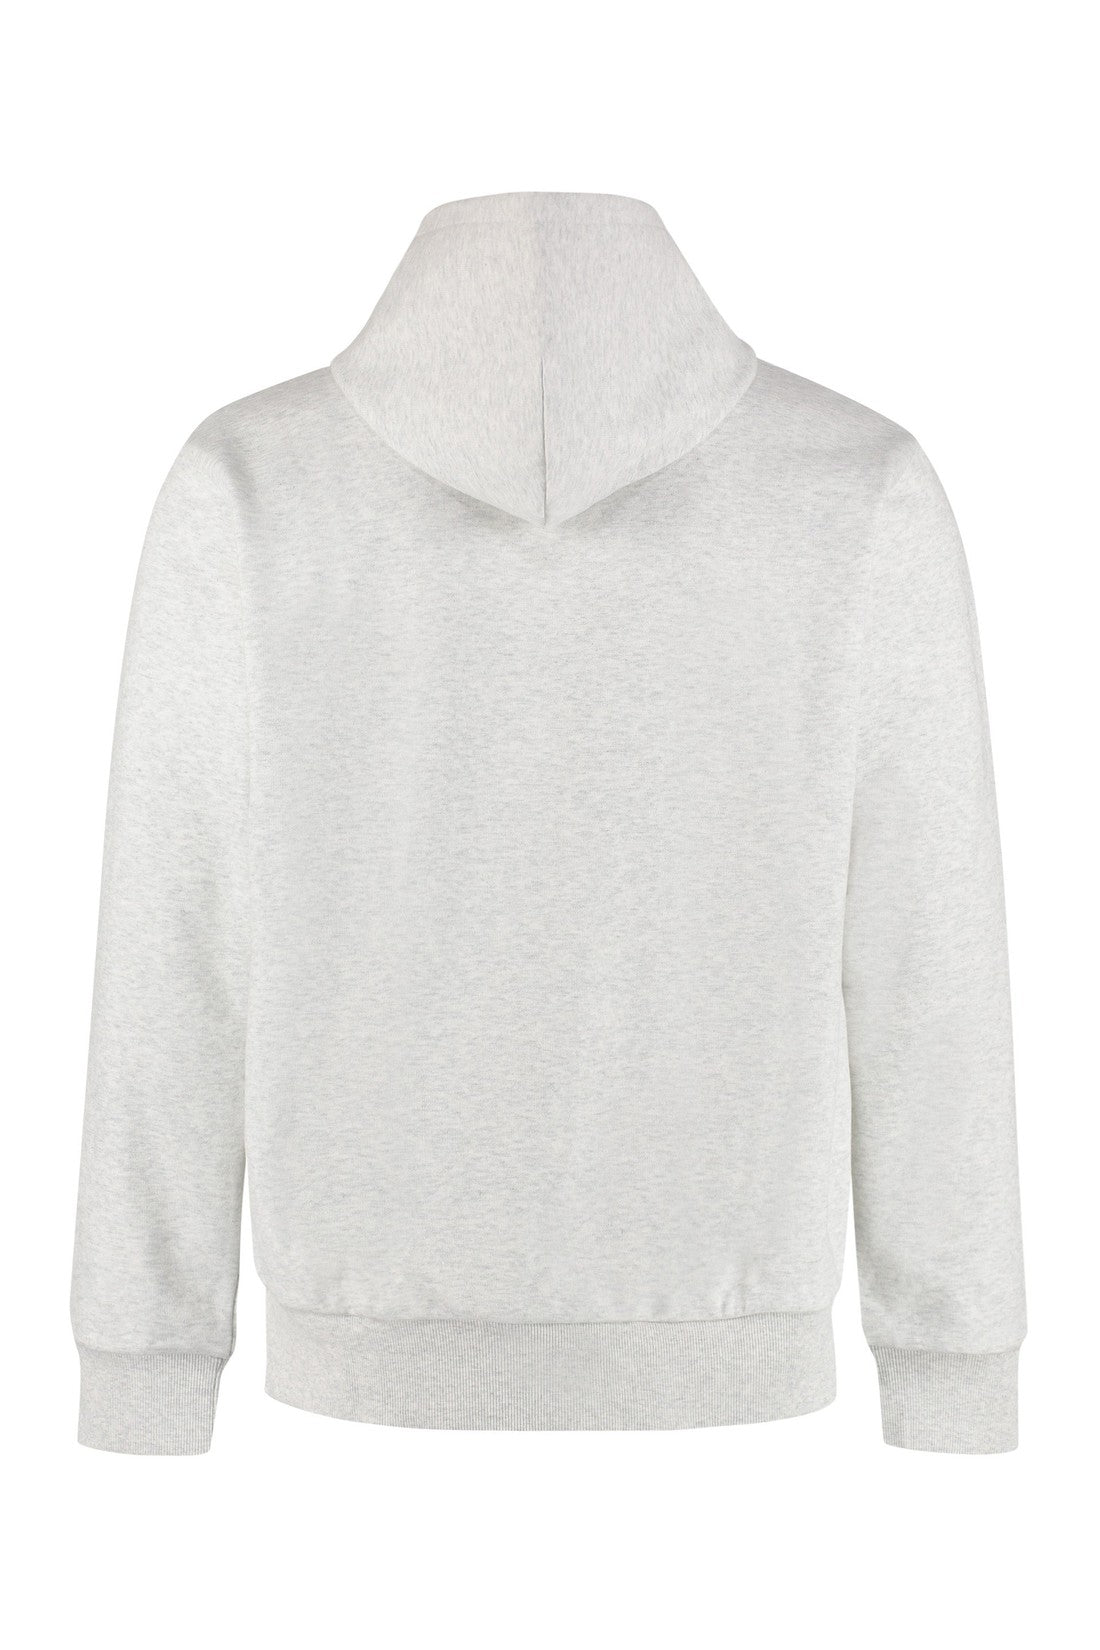 Carhartt-OUTLET-SALE-Cotton hoodie-ARCHIVIST